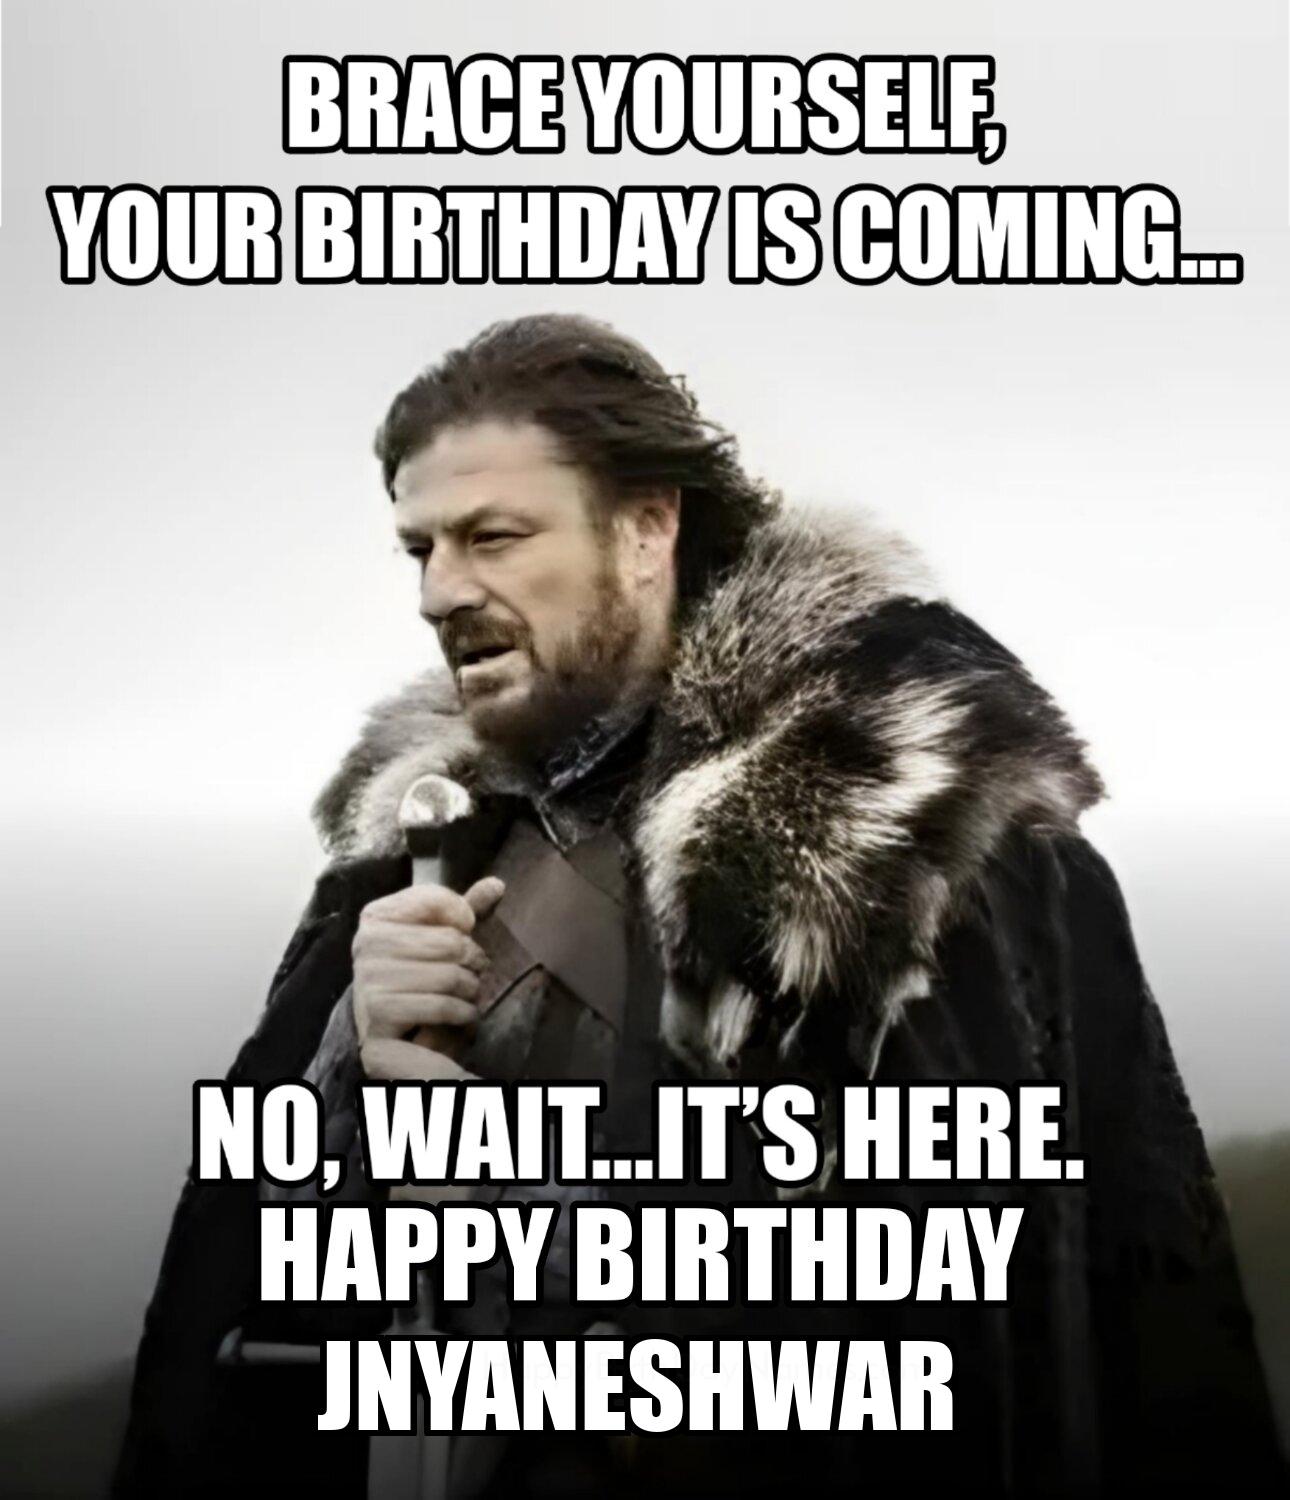 Happy Birthday Jnyaneshwar Brace Yourself Your Birthday Is Coming Meme